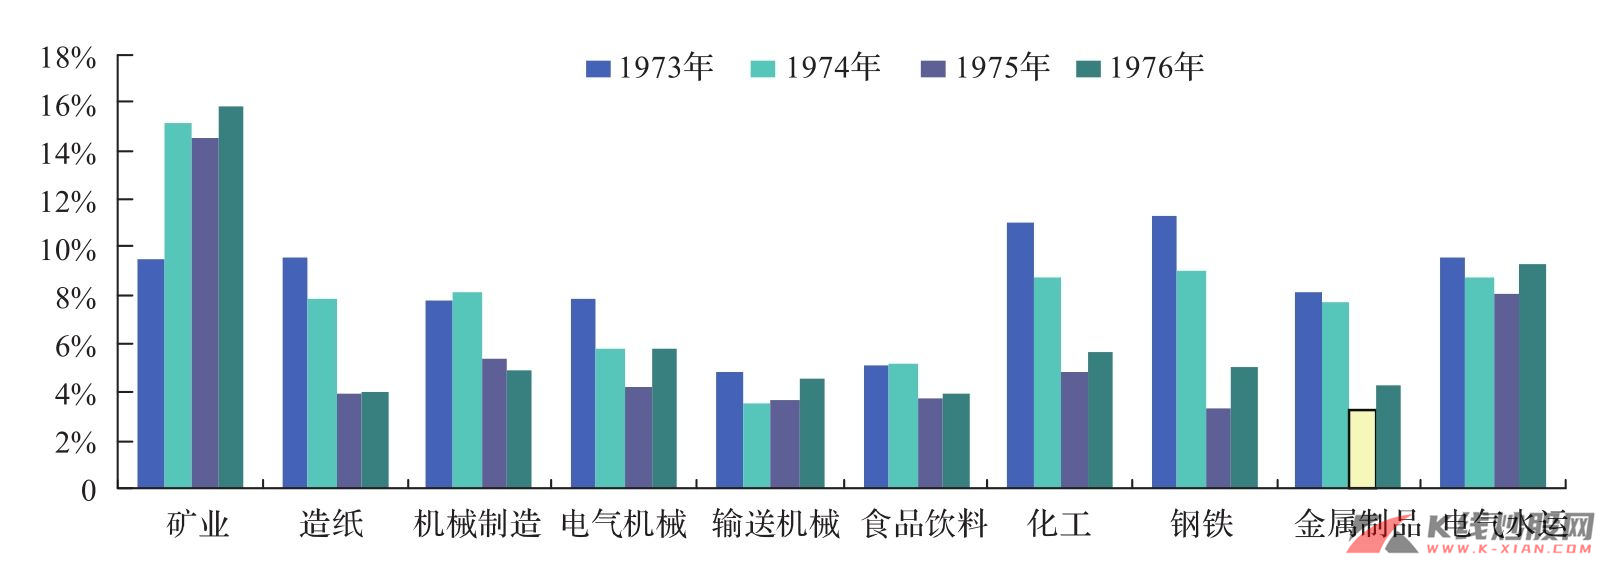 日本大类行业毛利率变化（1973—1976年）